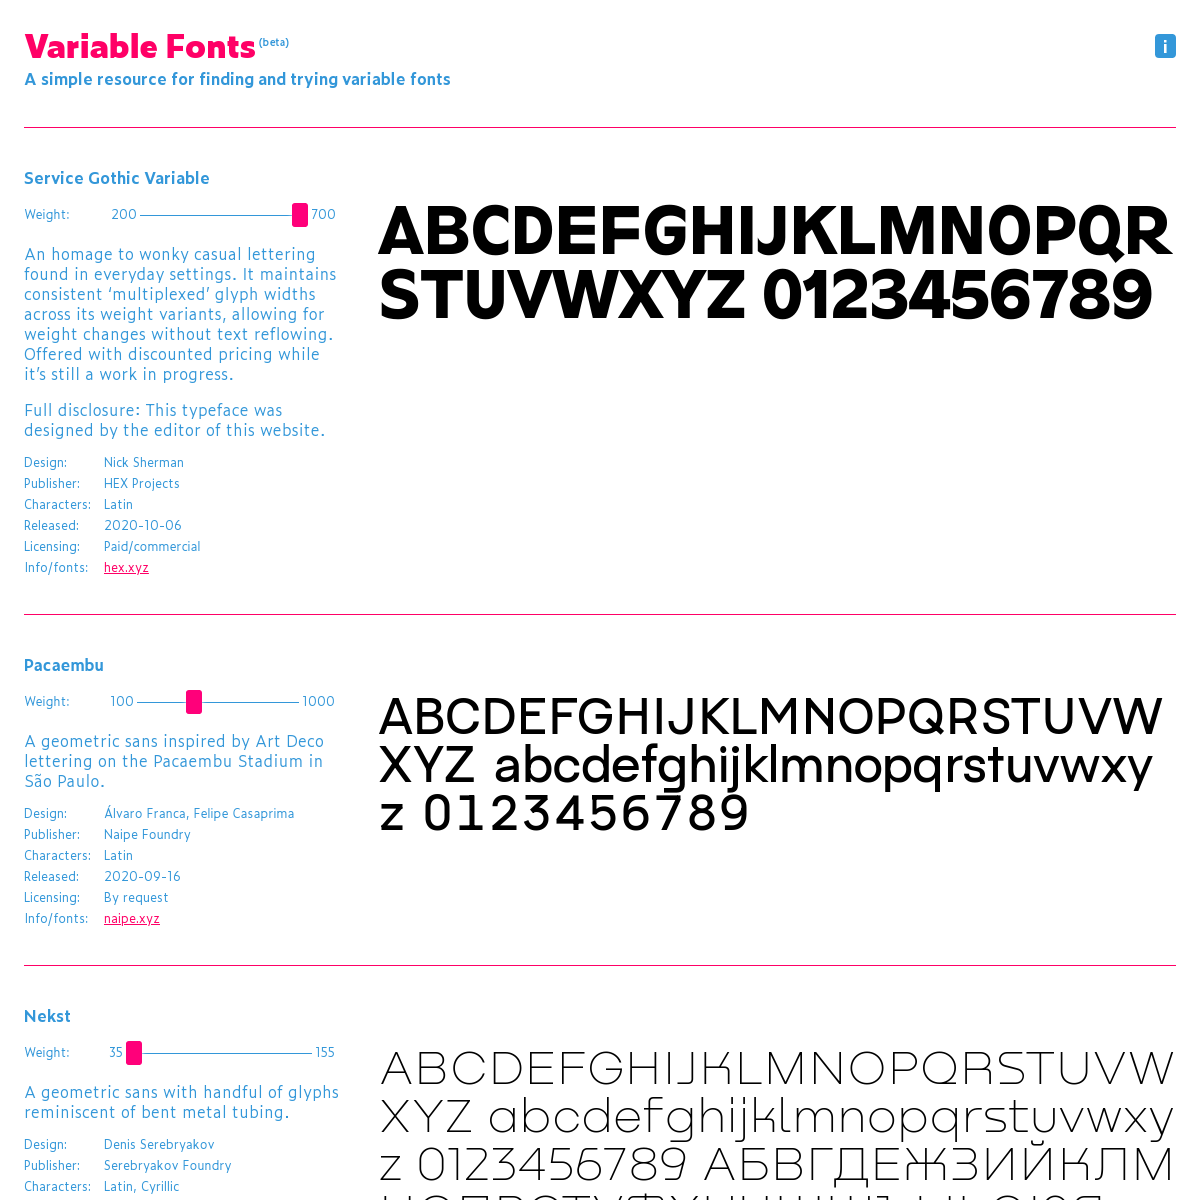 A complete backup of v-fonts.com